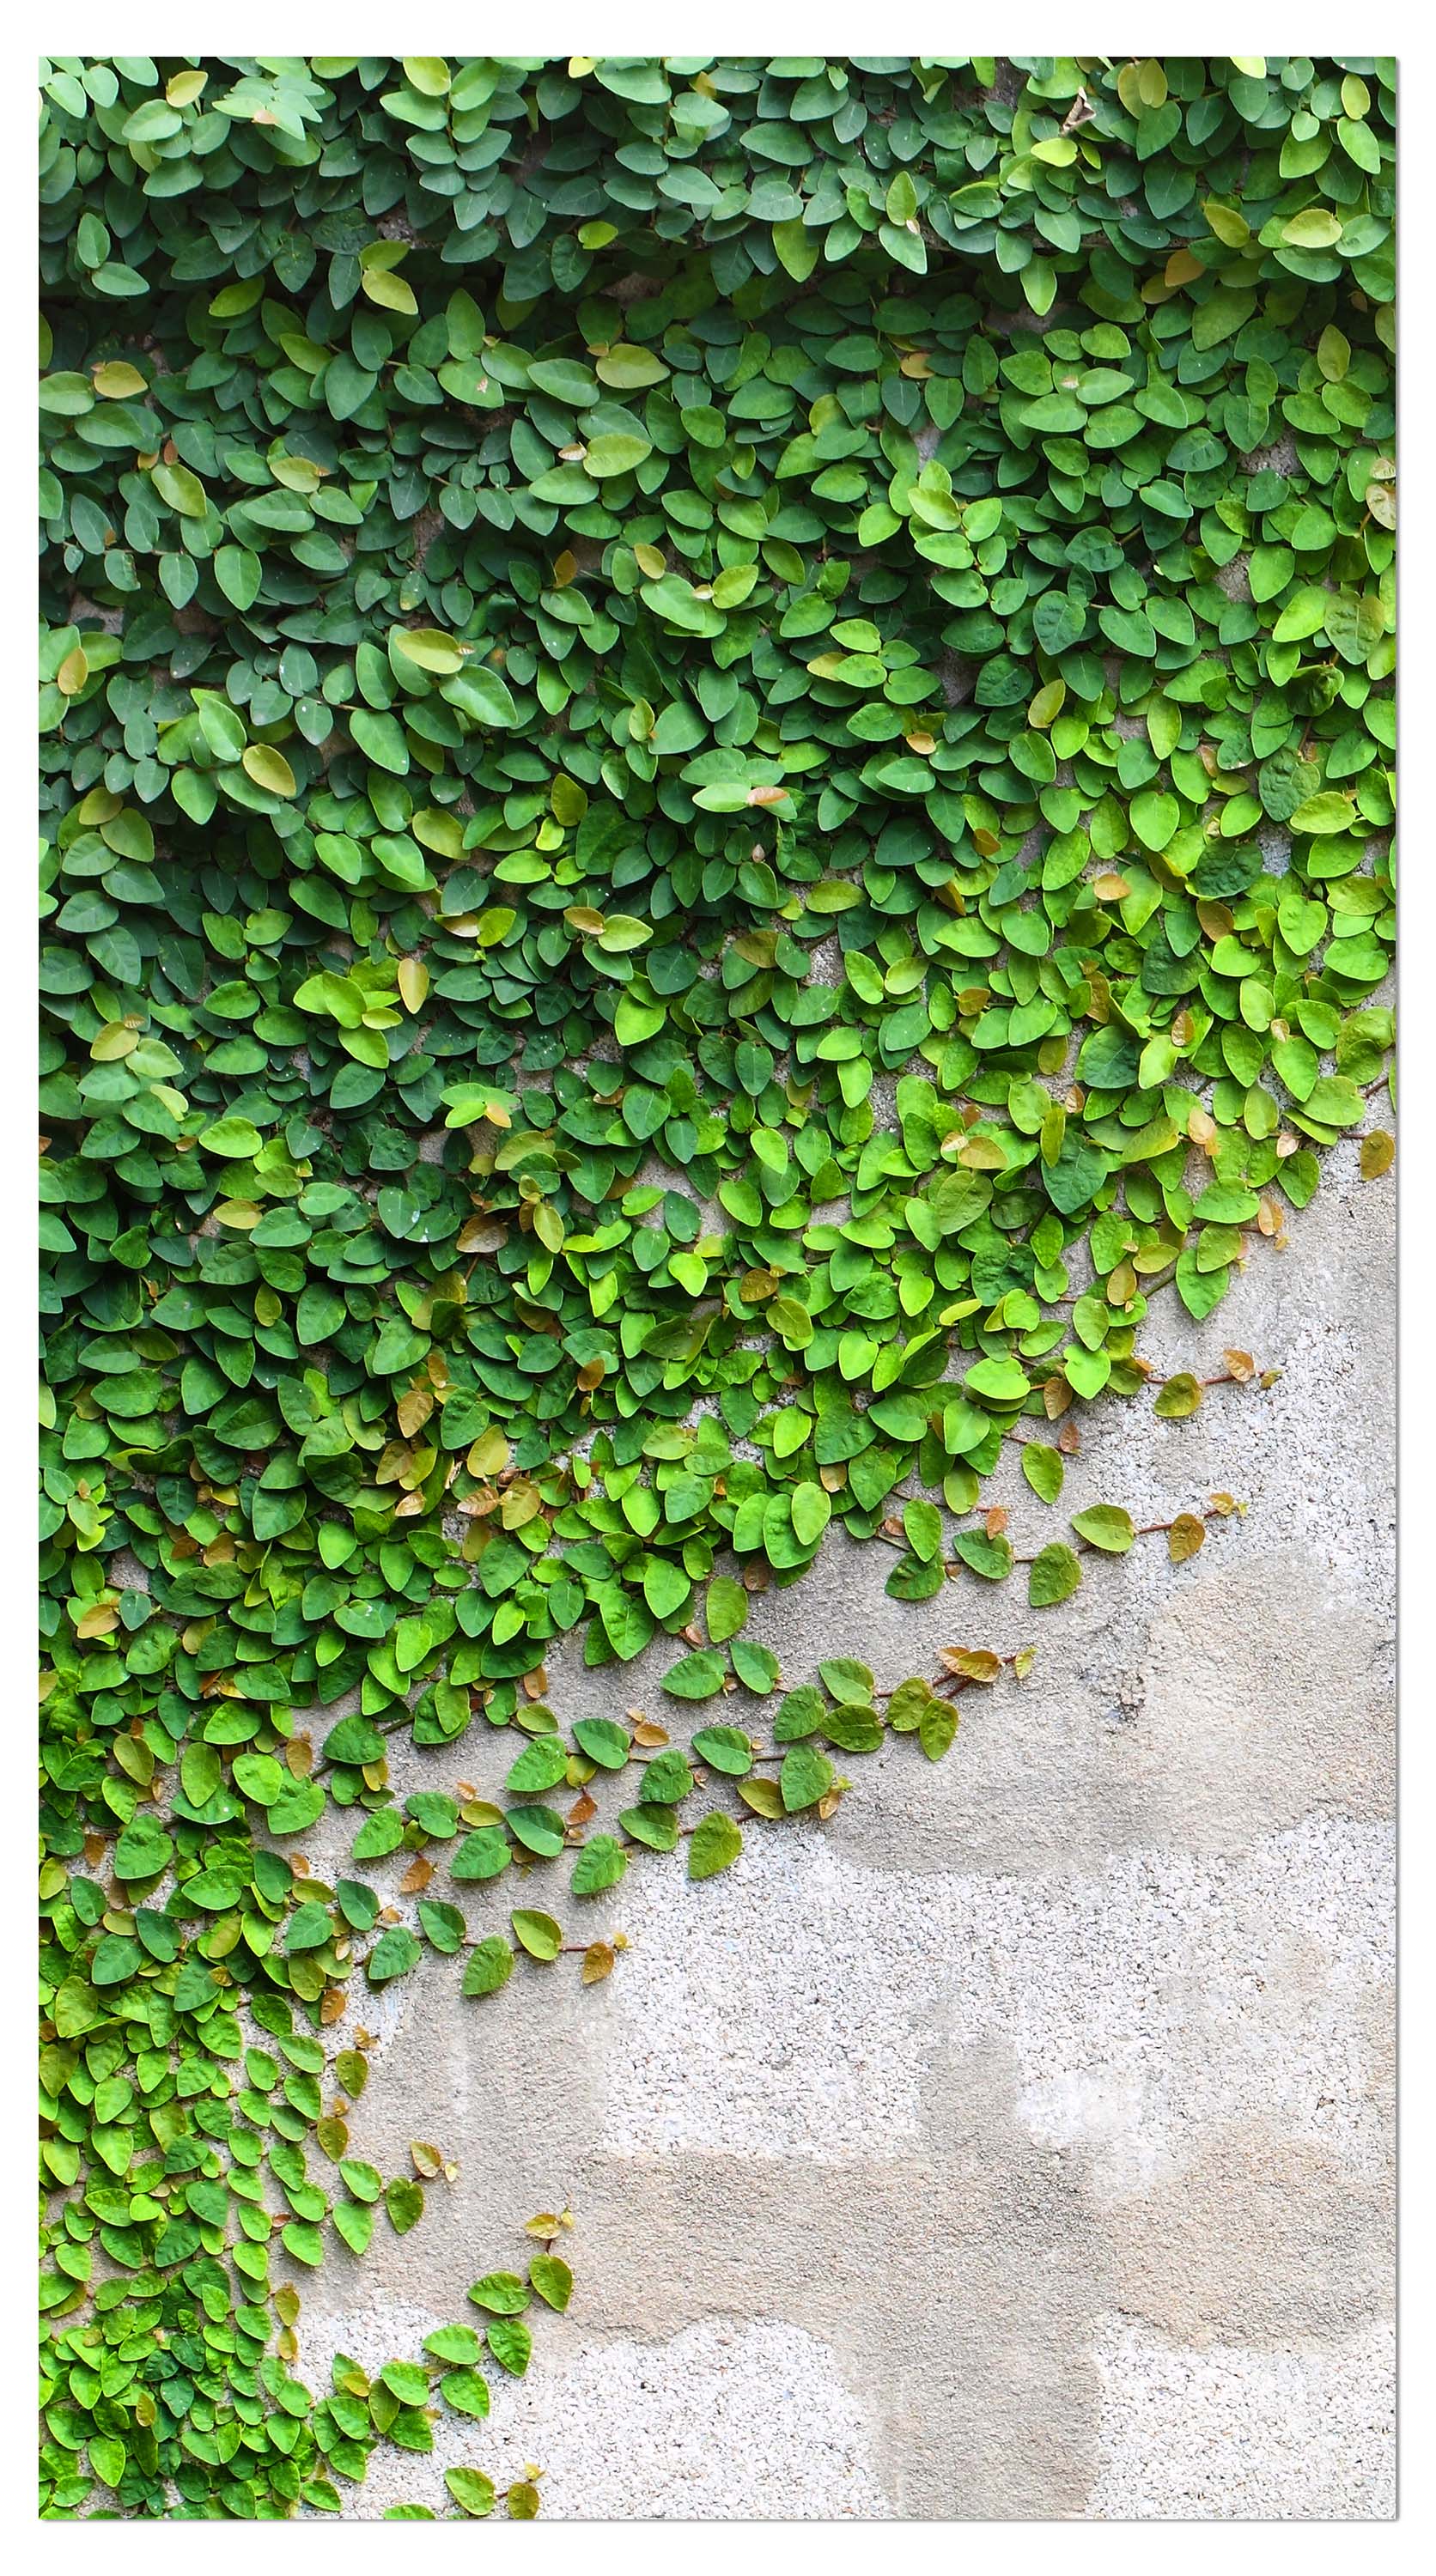 Garderobe Eine Kriechpflanze auf einer Mauer M0937 entdecken - Bild 4